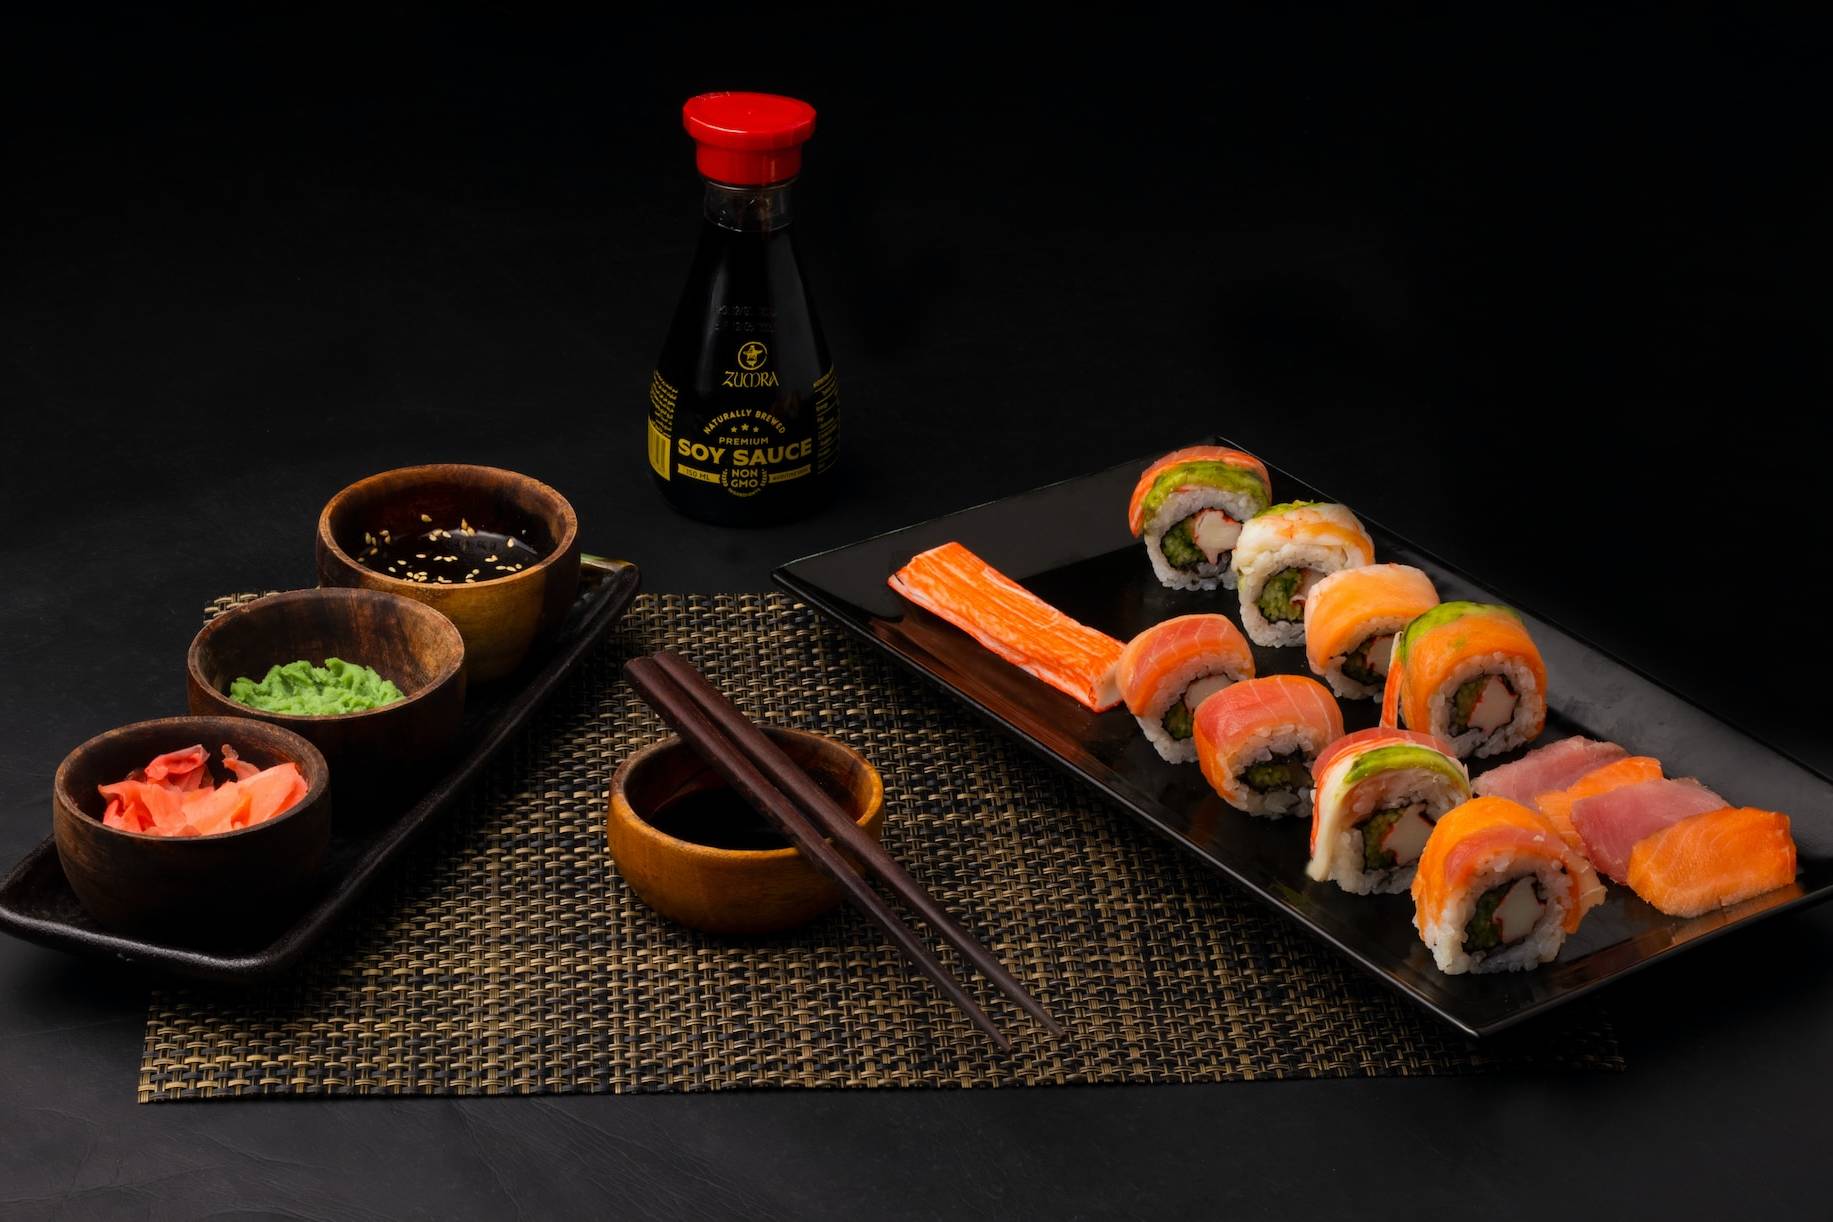 sushi on black ceramic plate beside sauce bottle